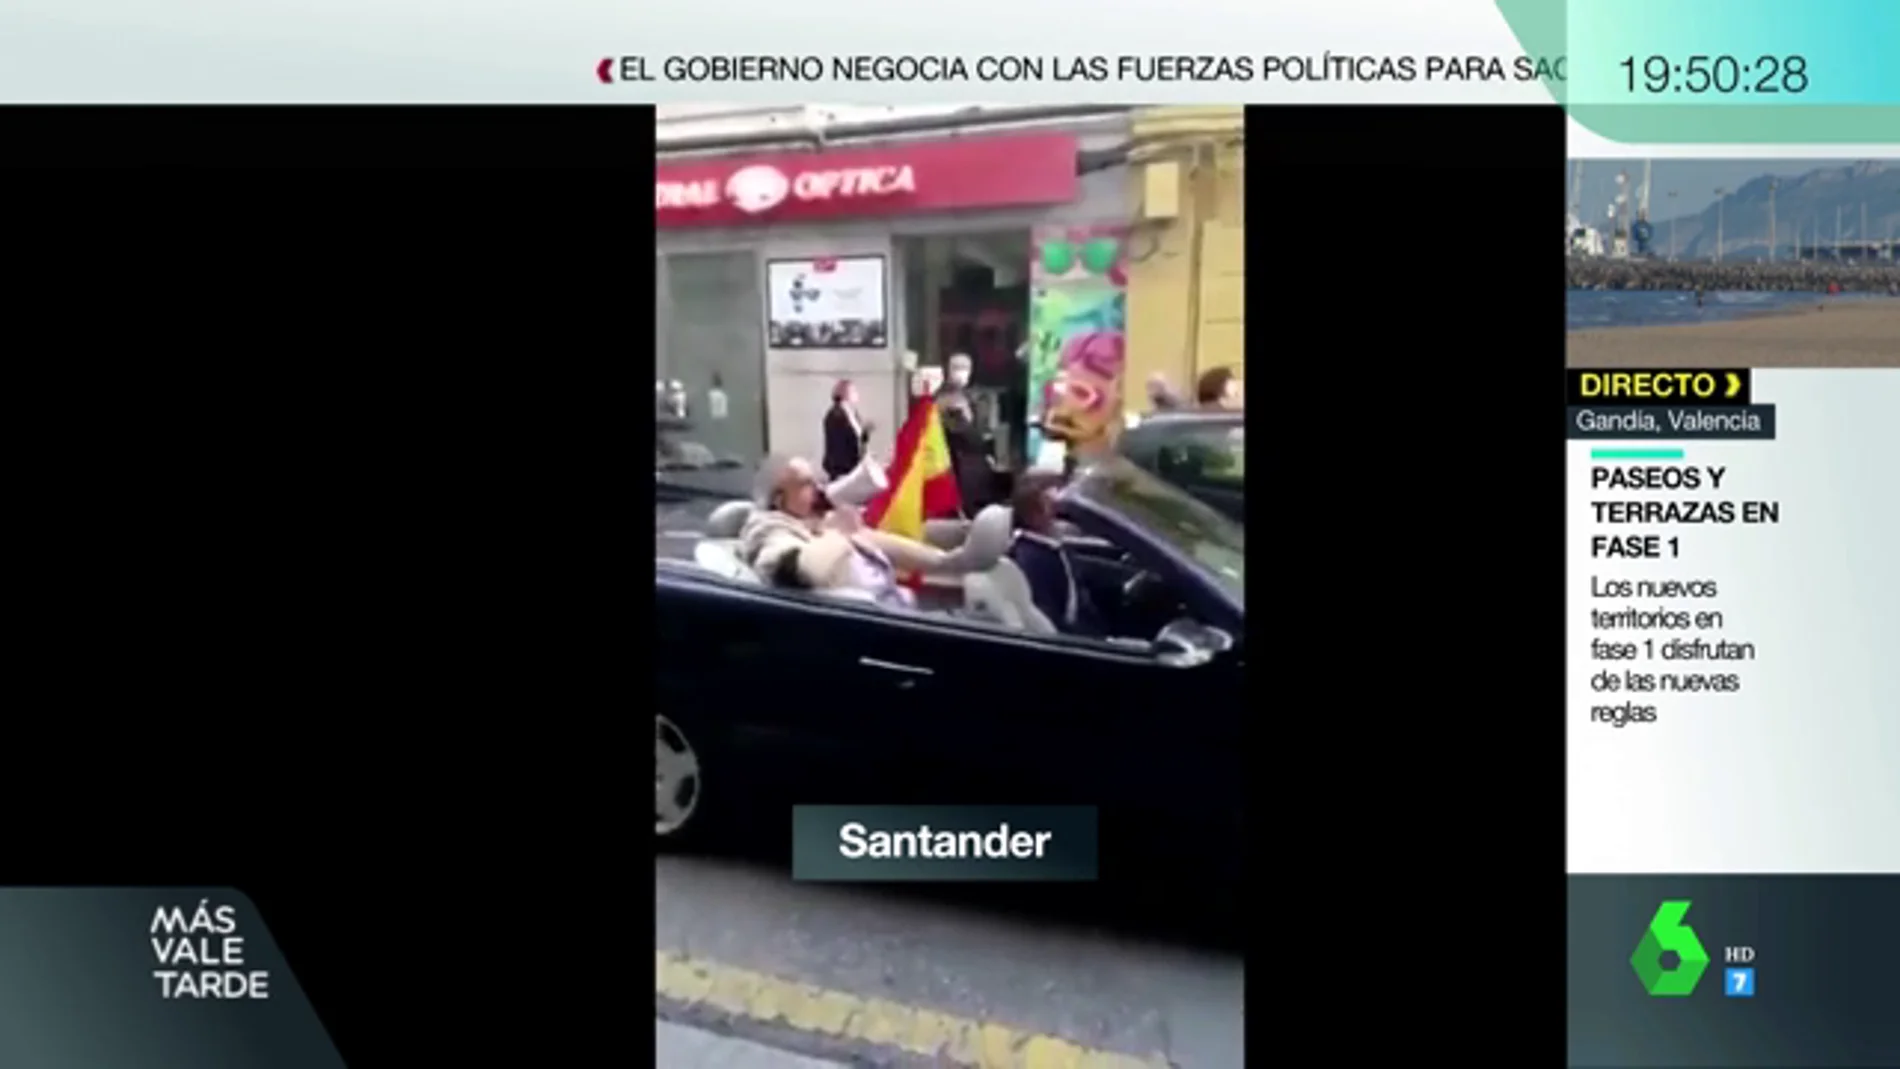 En un descapotable y con chofer: la protesta de un hombre contra el Gobierno en Santander que se ha hecho viral